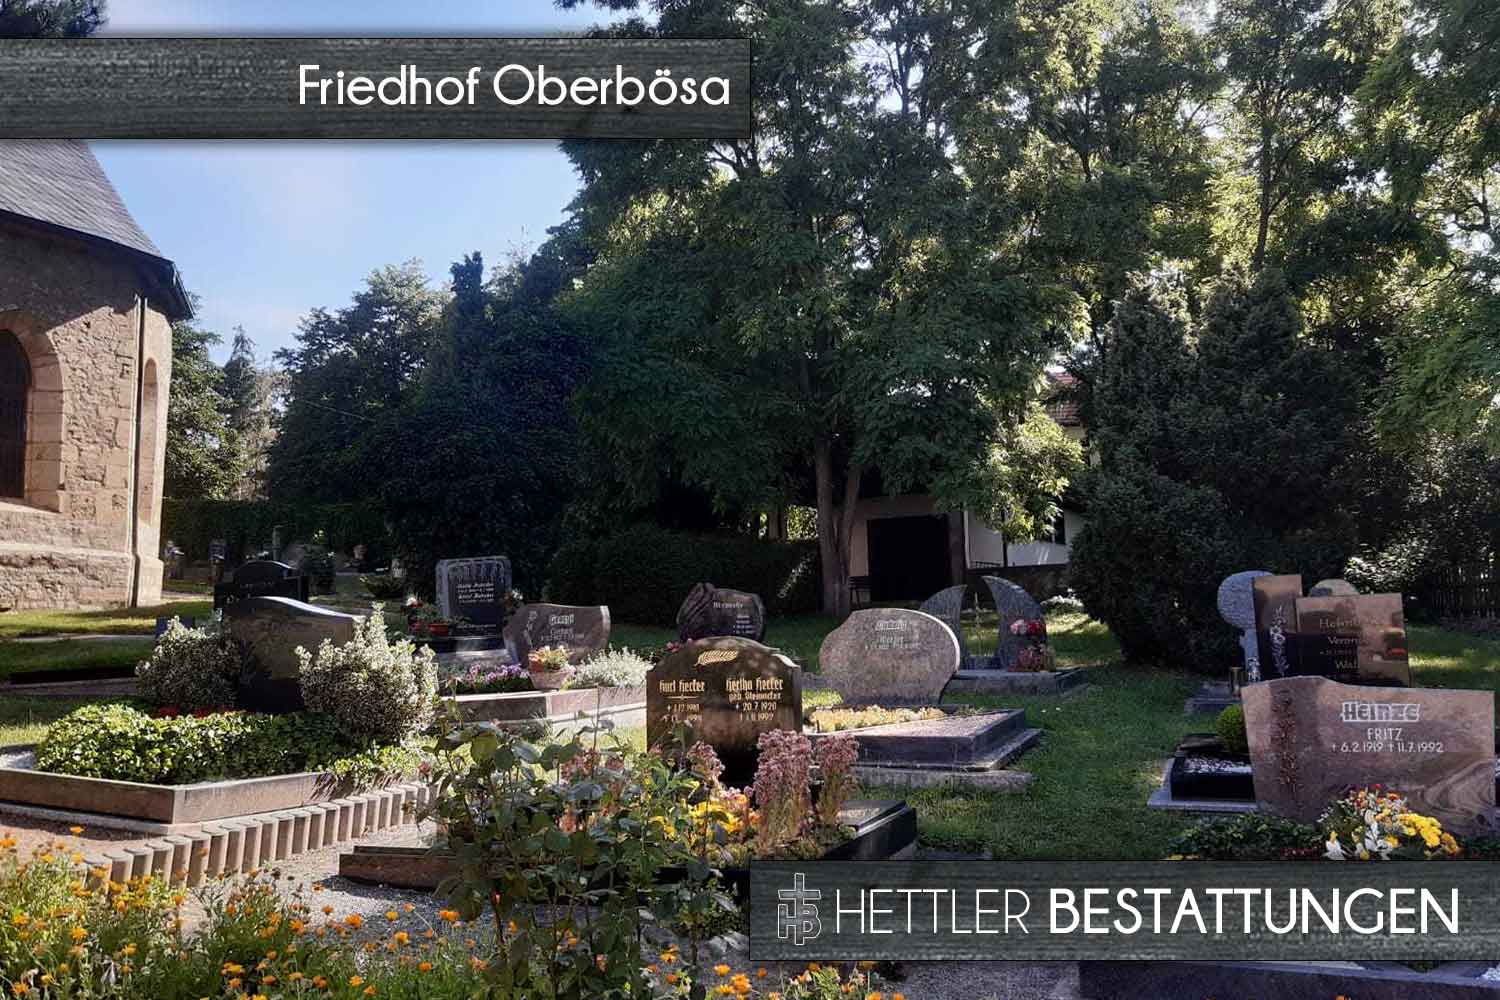 Friedhof in Oberbösa. Ihr Ort des Abschieds mit Hettler Bestattungen.